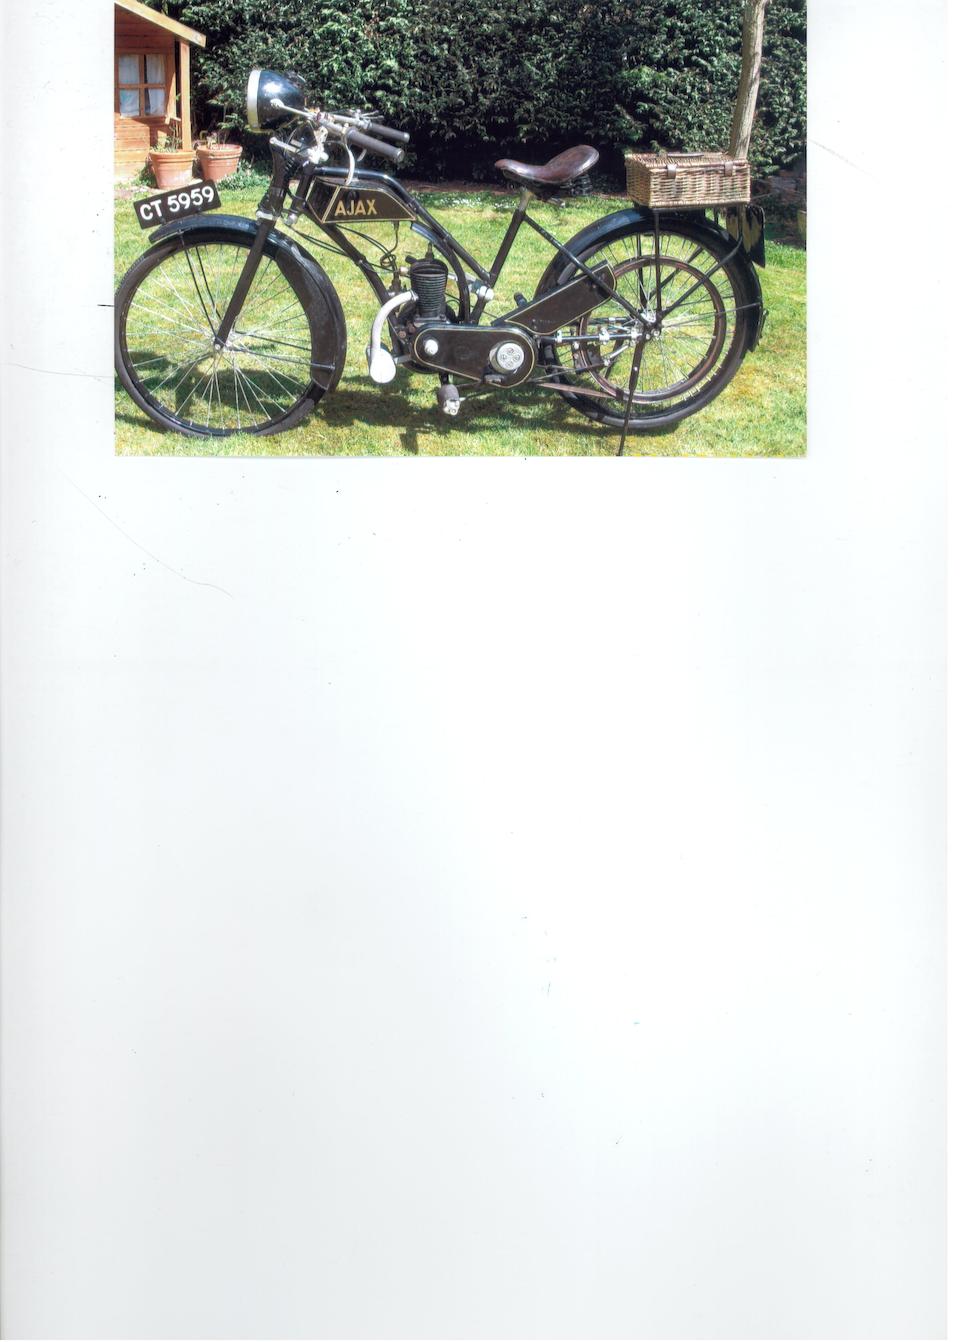 1923 Ajax 'Lady's Model' 147 cc Frame no. 1132 Engine no. 6058